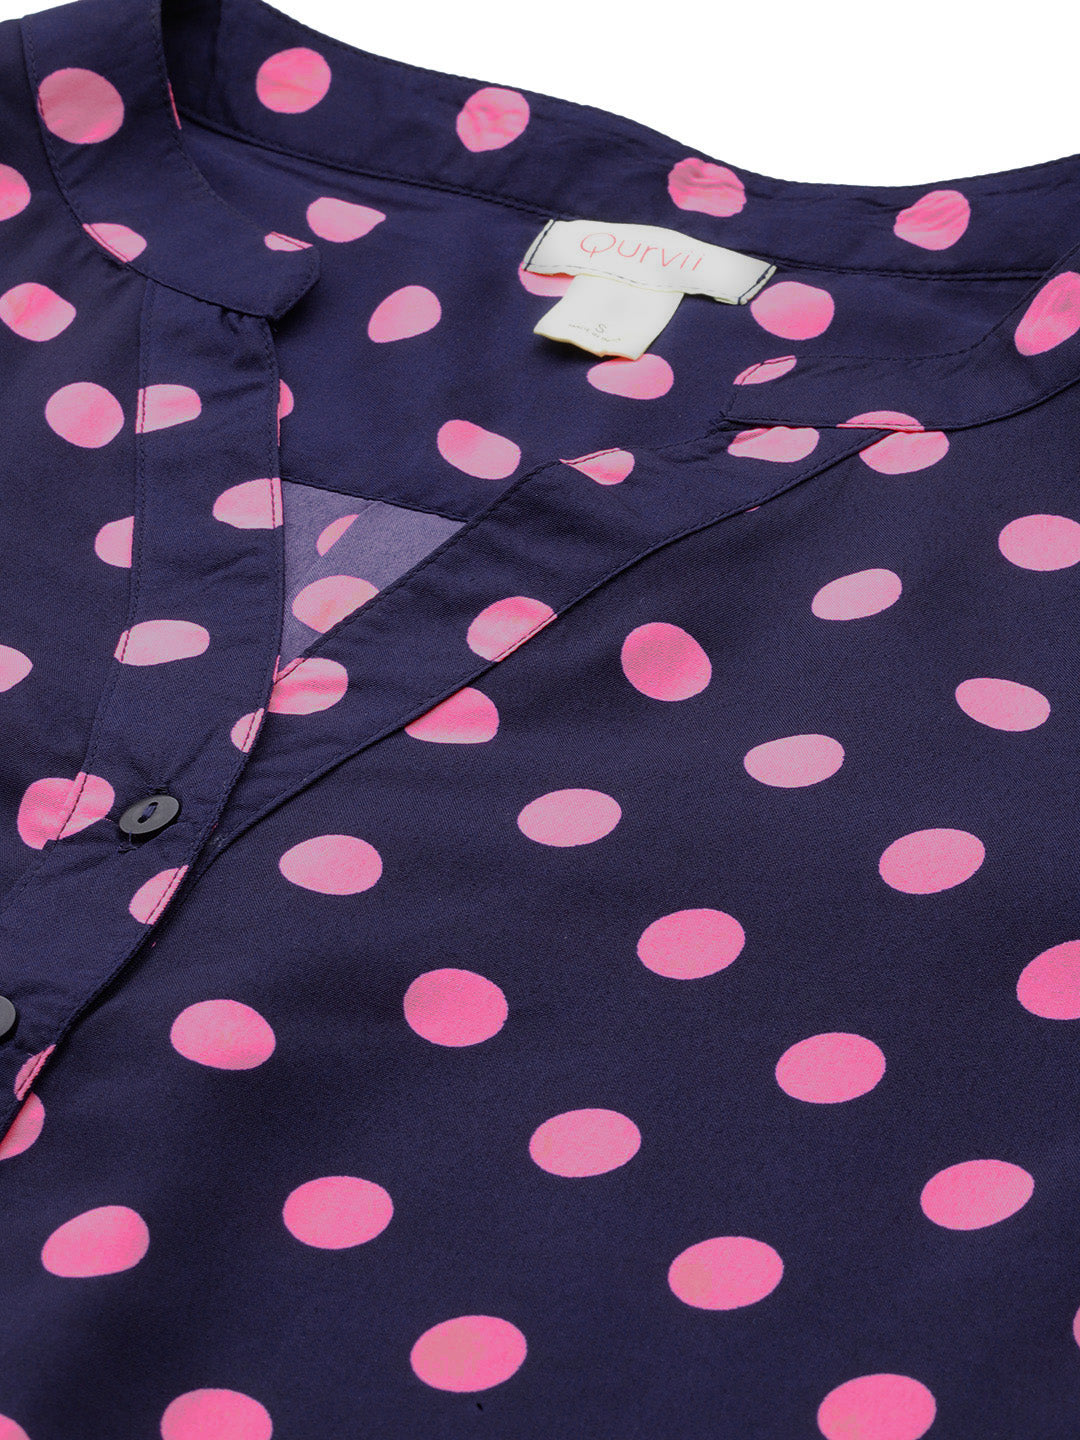 Navy and pink polka crepe shirt and pant set